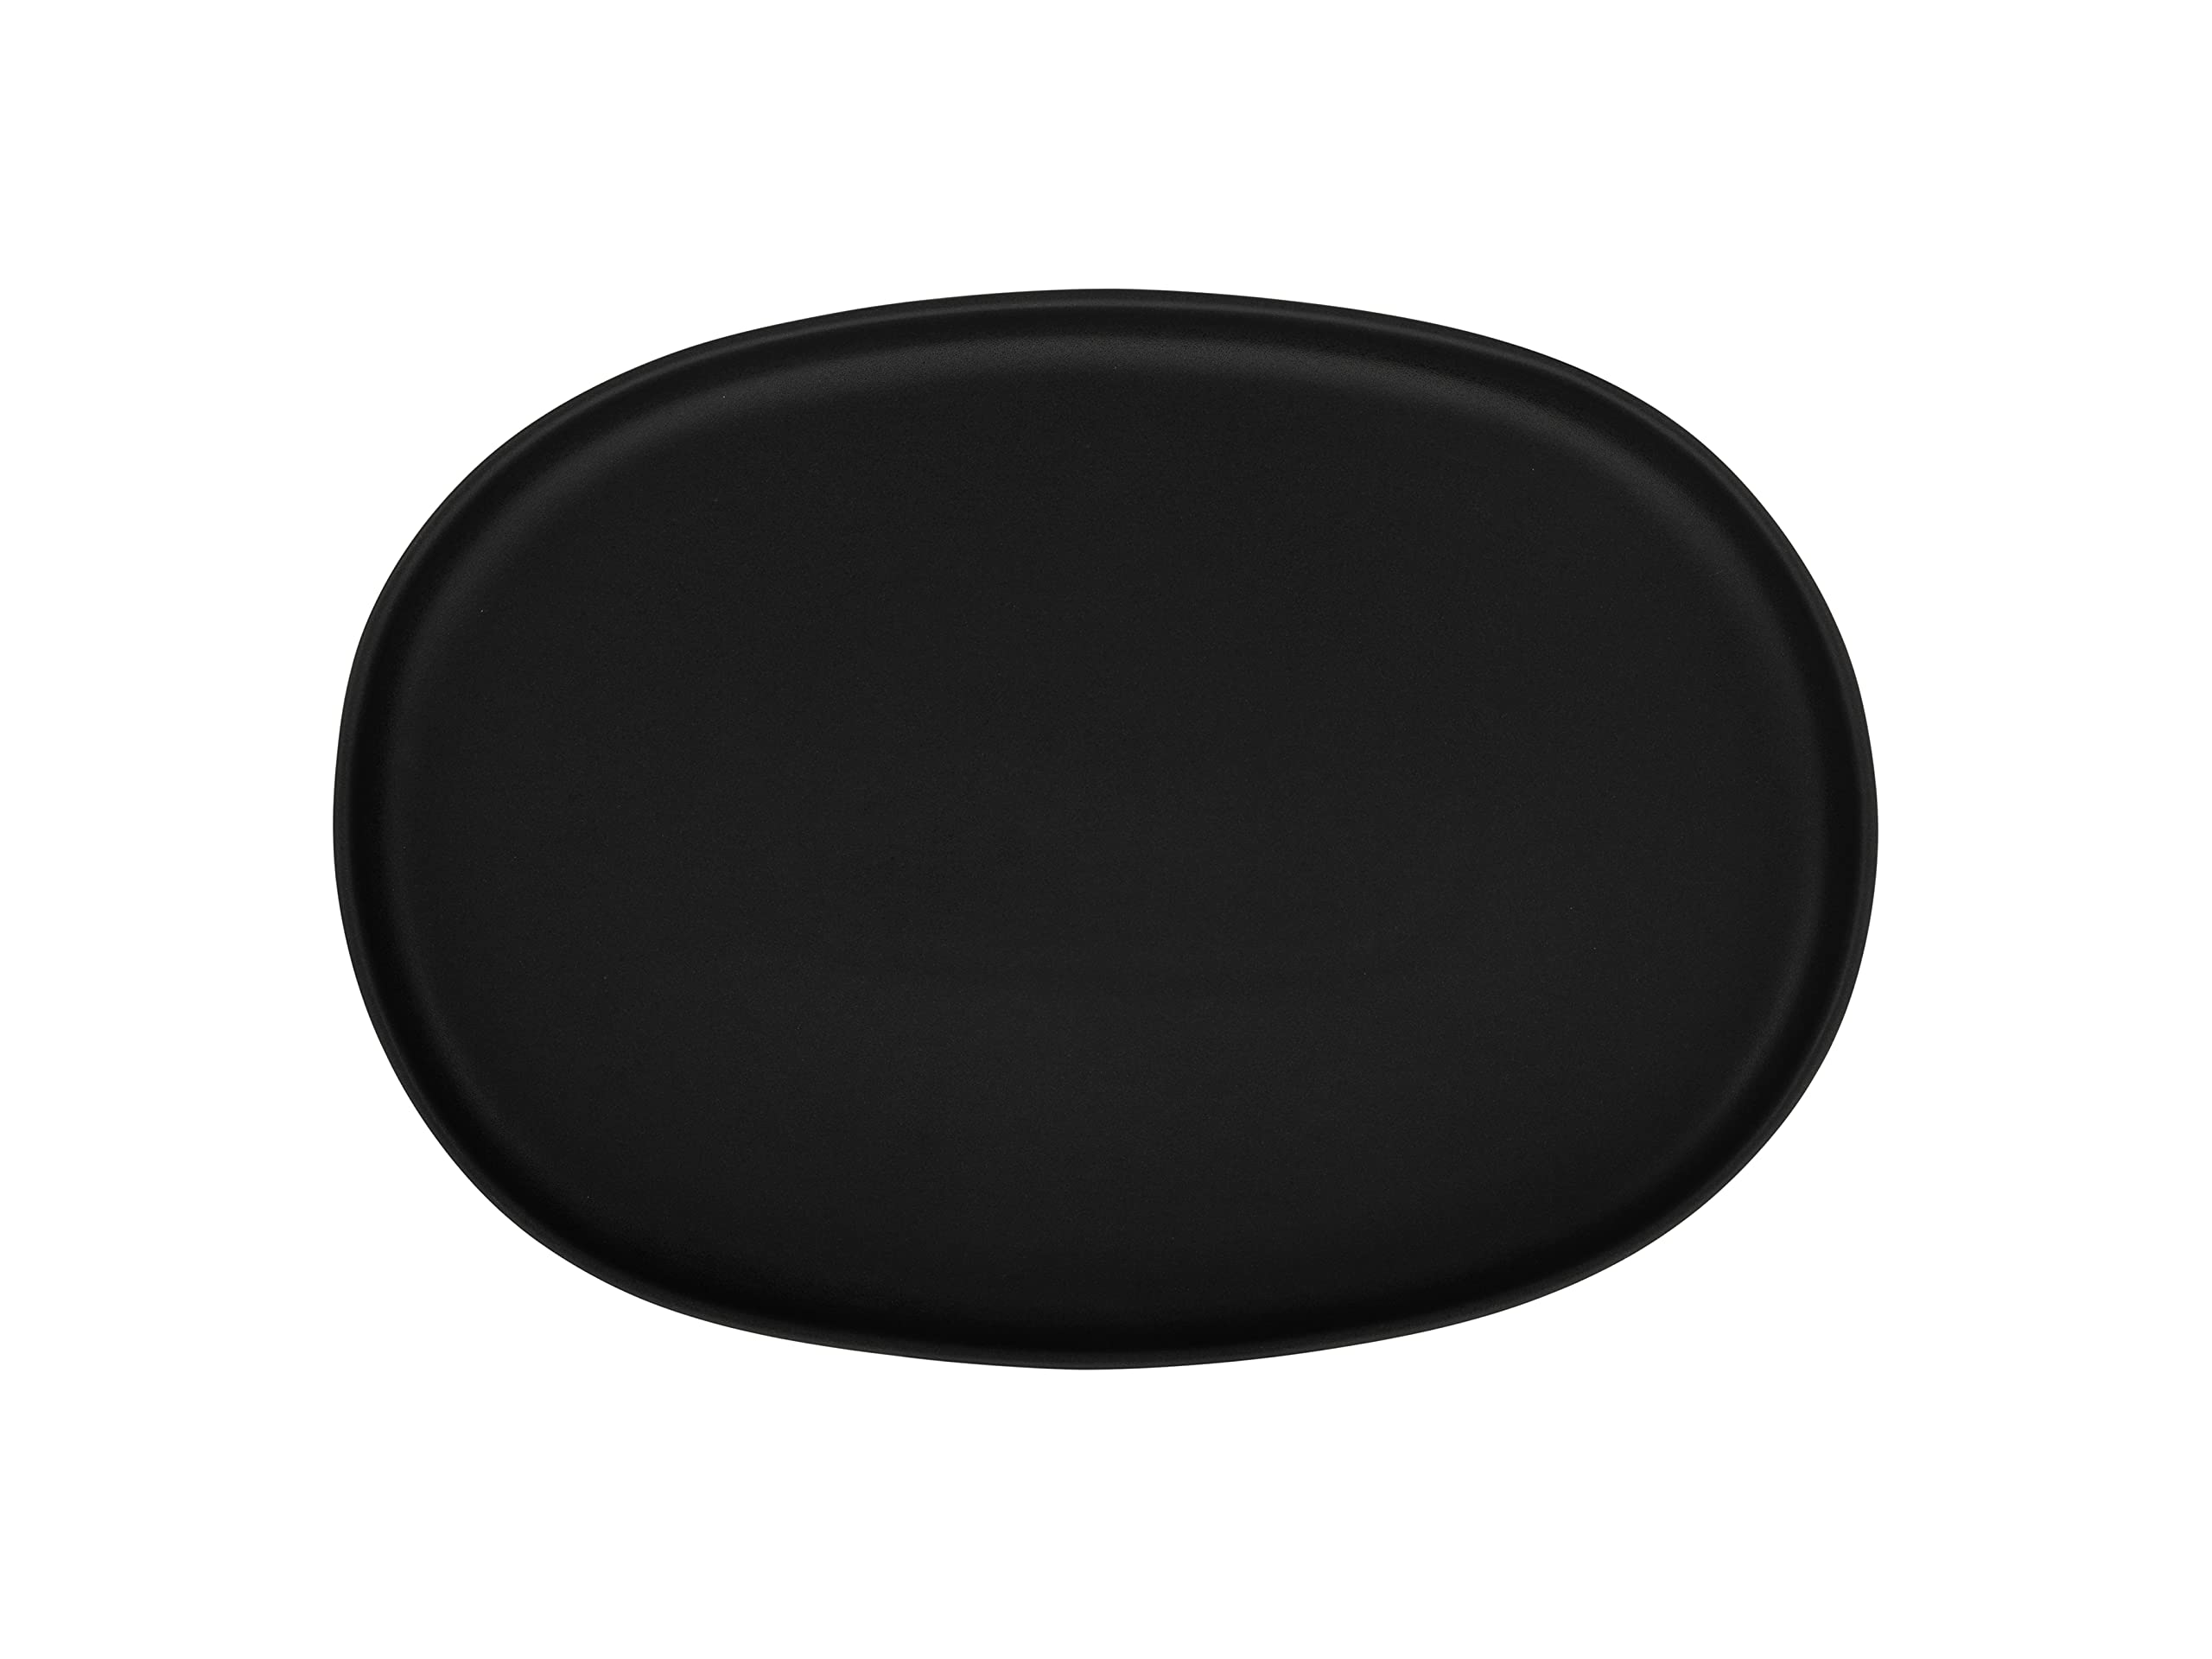 CreaTable, 30002, Serie Uno Black - Servierplatte oval, Geschirrset, Servierplatte 1 teilig